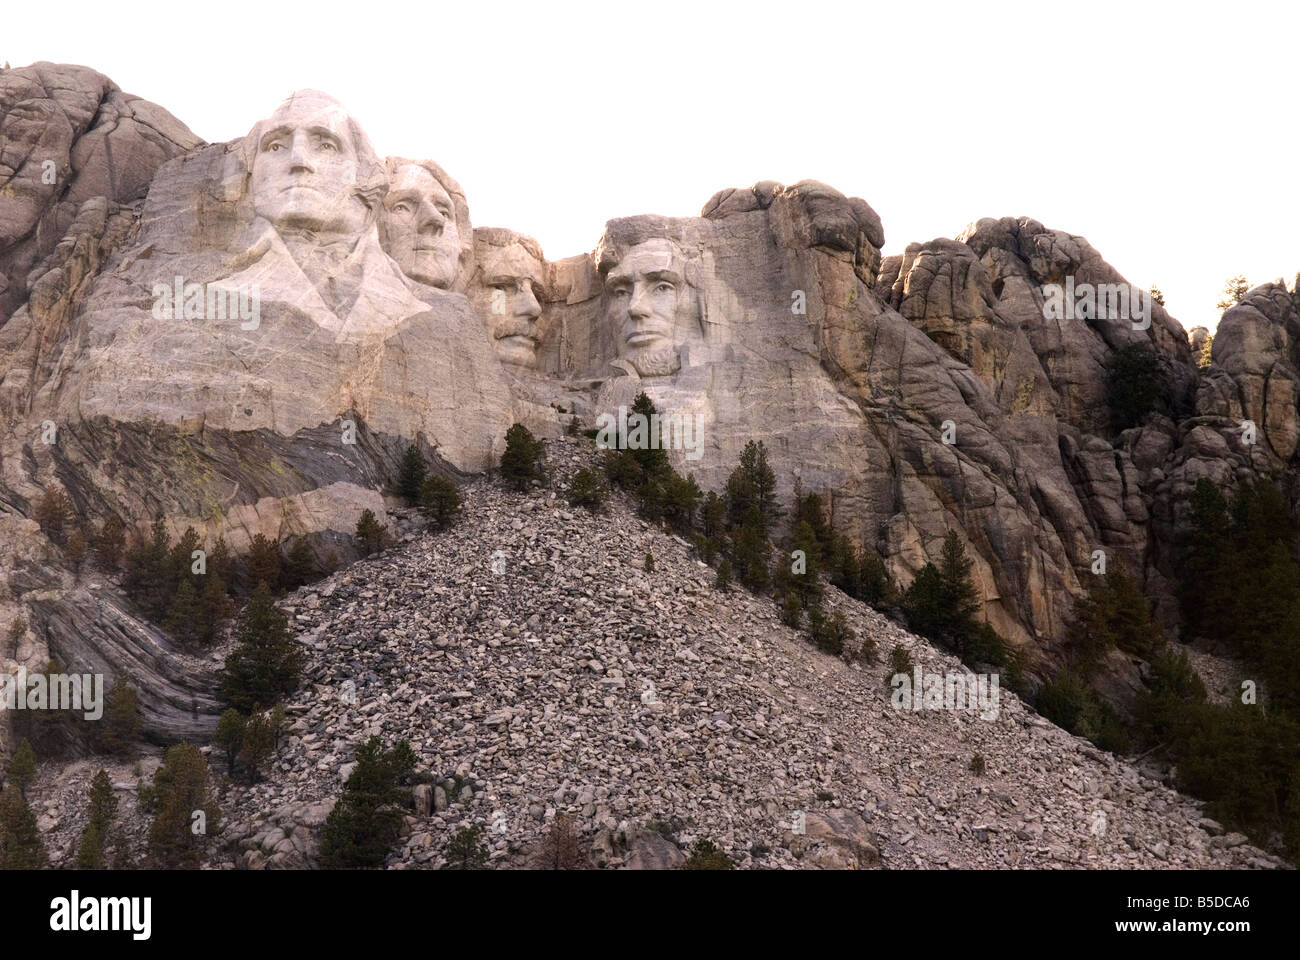 Le mont Rushmore dans le Dakota du Sud USA Banque D'Images